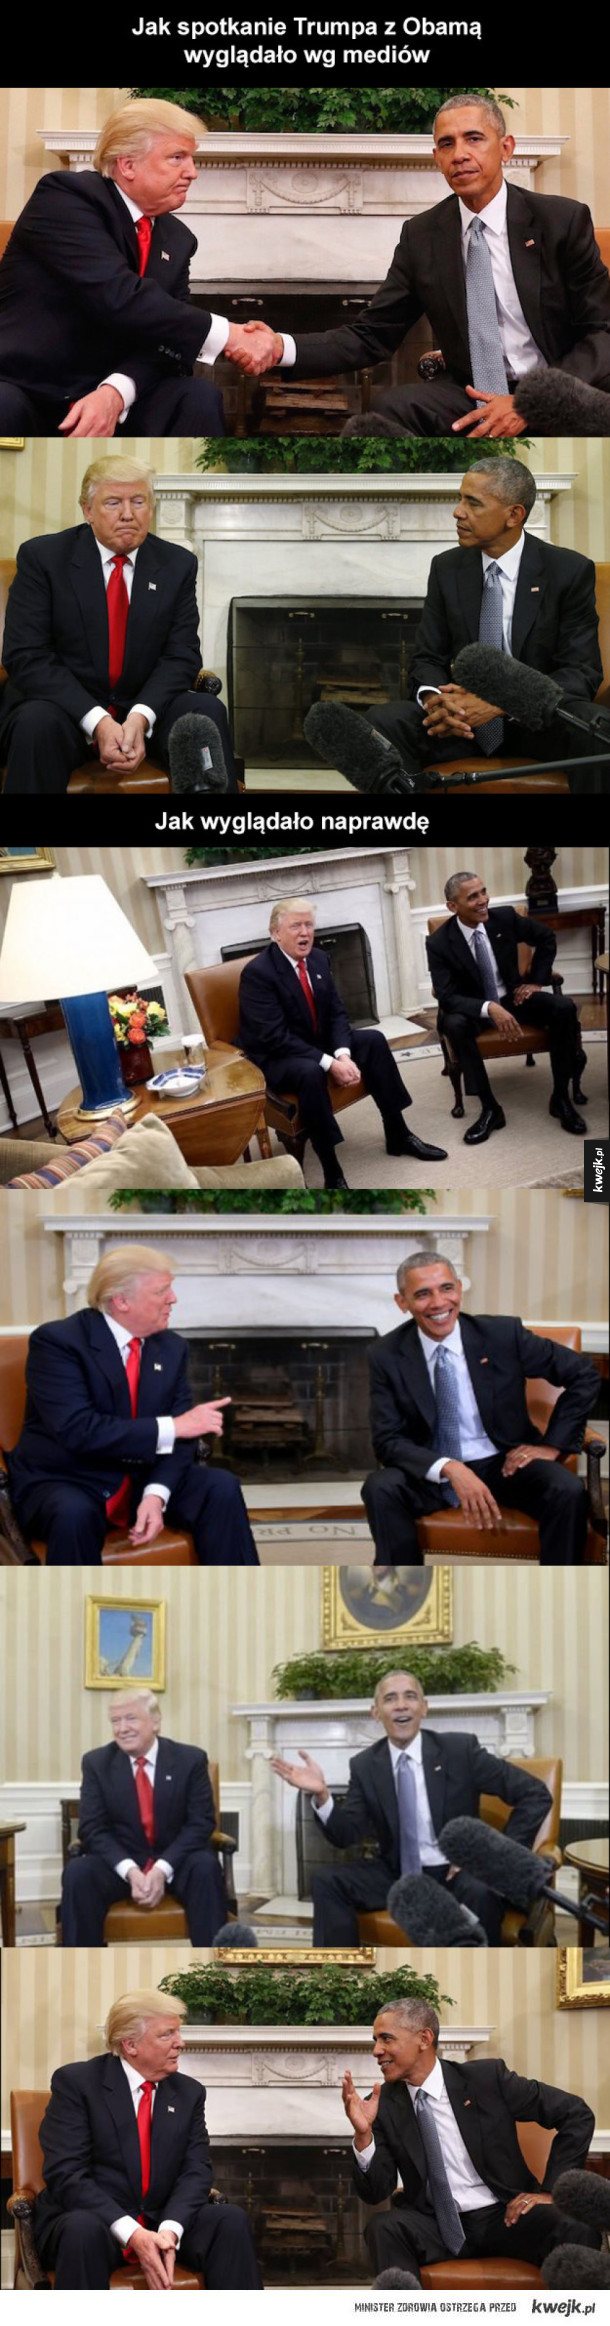 Spotkanie Trumpa z Obamą